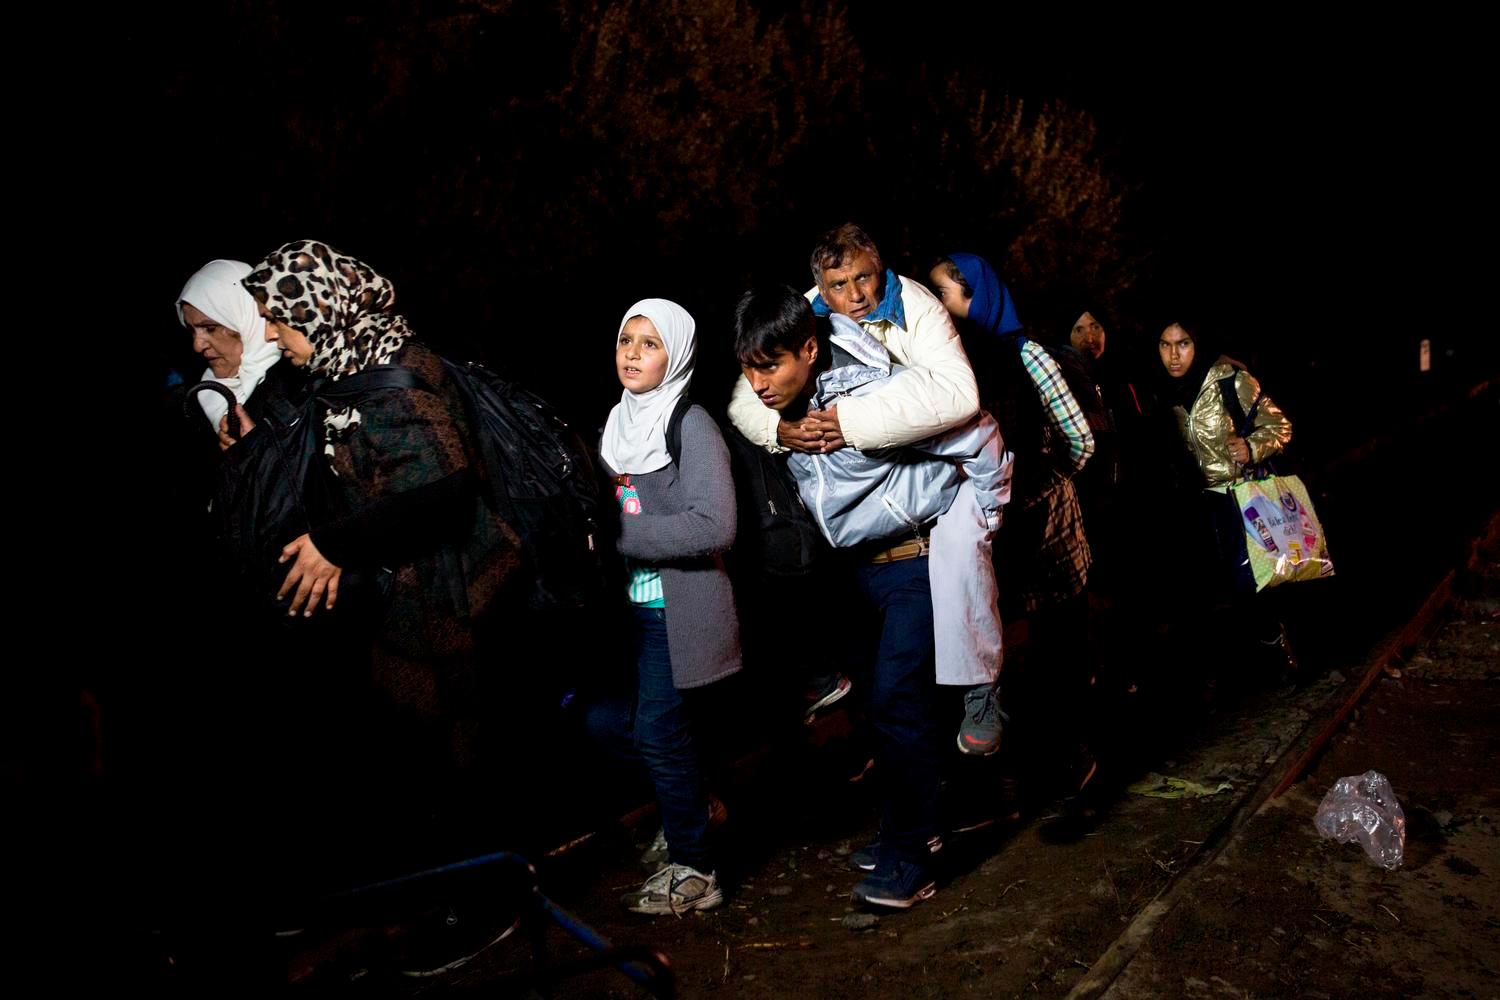 Un giovane afgano trasporta il padre sulle spalle lungo il confine serbo-ungherese, alle 23:50 del 14.09.15. A mezzanotte le autoritÃ  chiuderanno la frontiera. Foto di Valerio Muscella